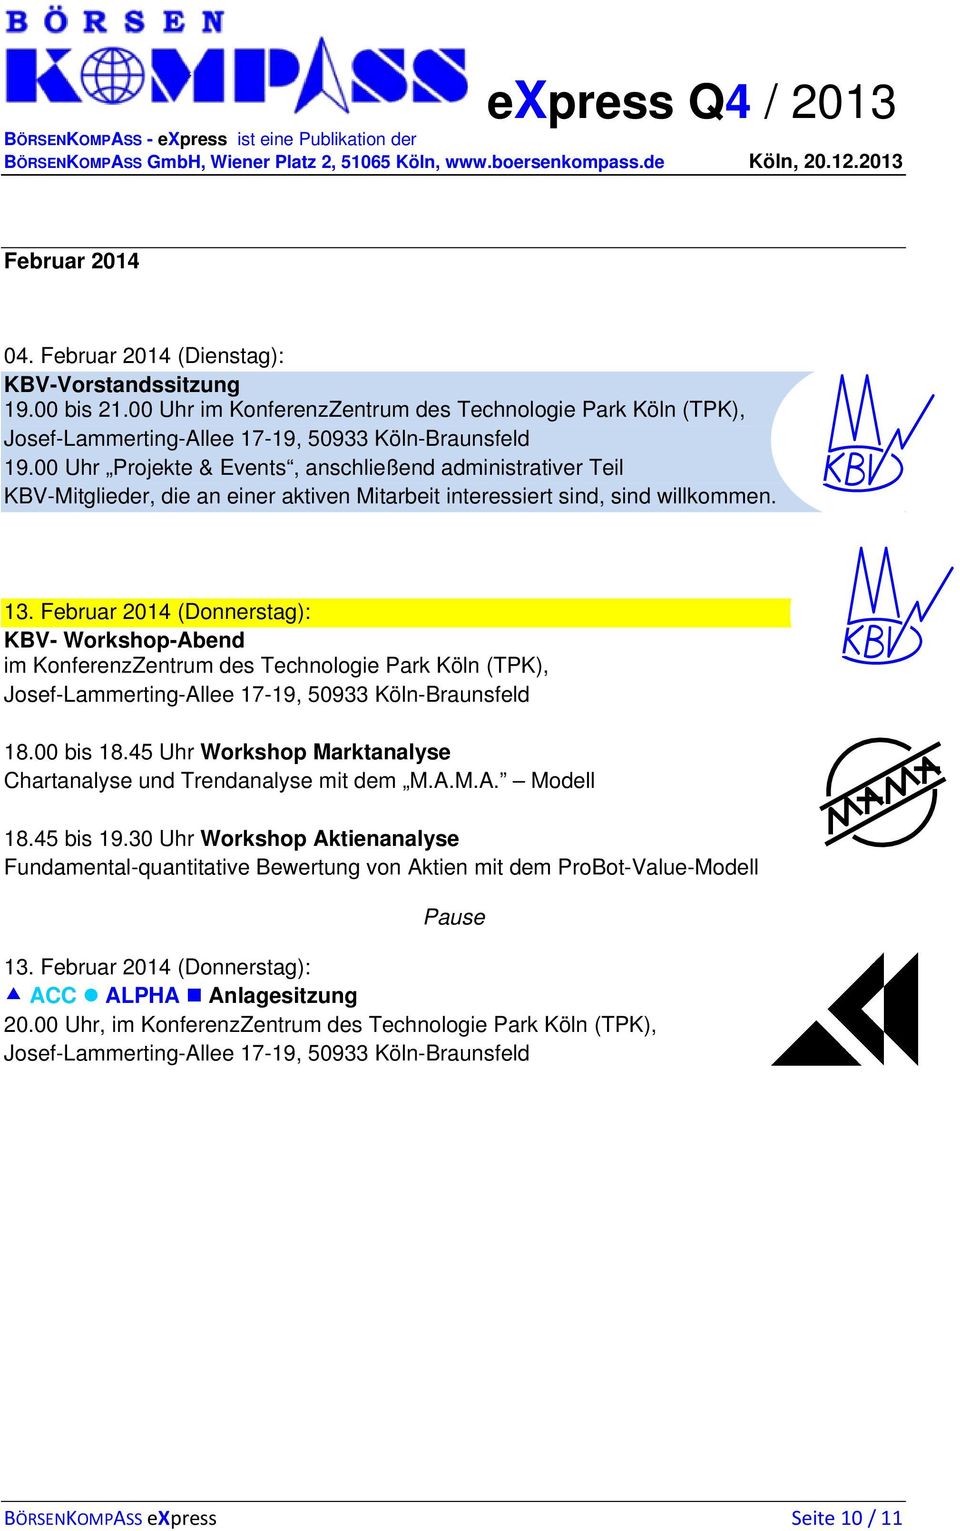 Februar 2014 (Donnerstag): KBV- Workshop-Abend im KonferenzZentrum des Technologie Park Köln (TPK), 18.00 bis 18.45 Uhr Workshop Marktanalyse Chartanalyse und Trendanalyse mit dem M.A.M.A. Modell 18.